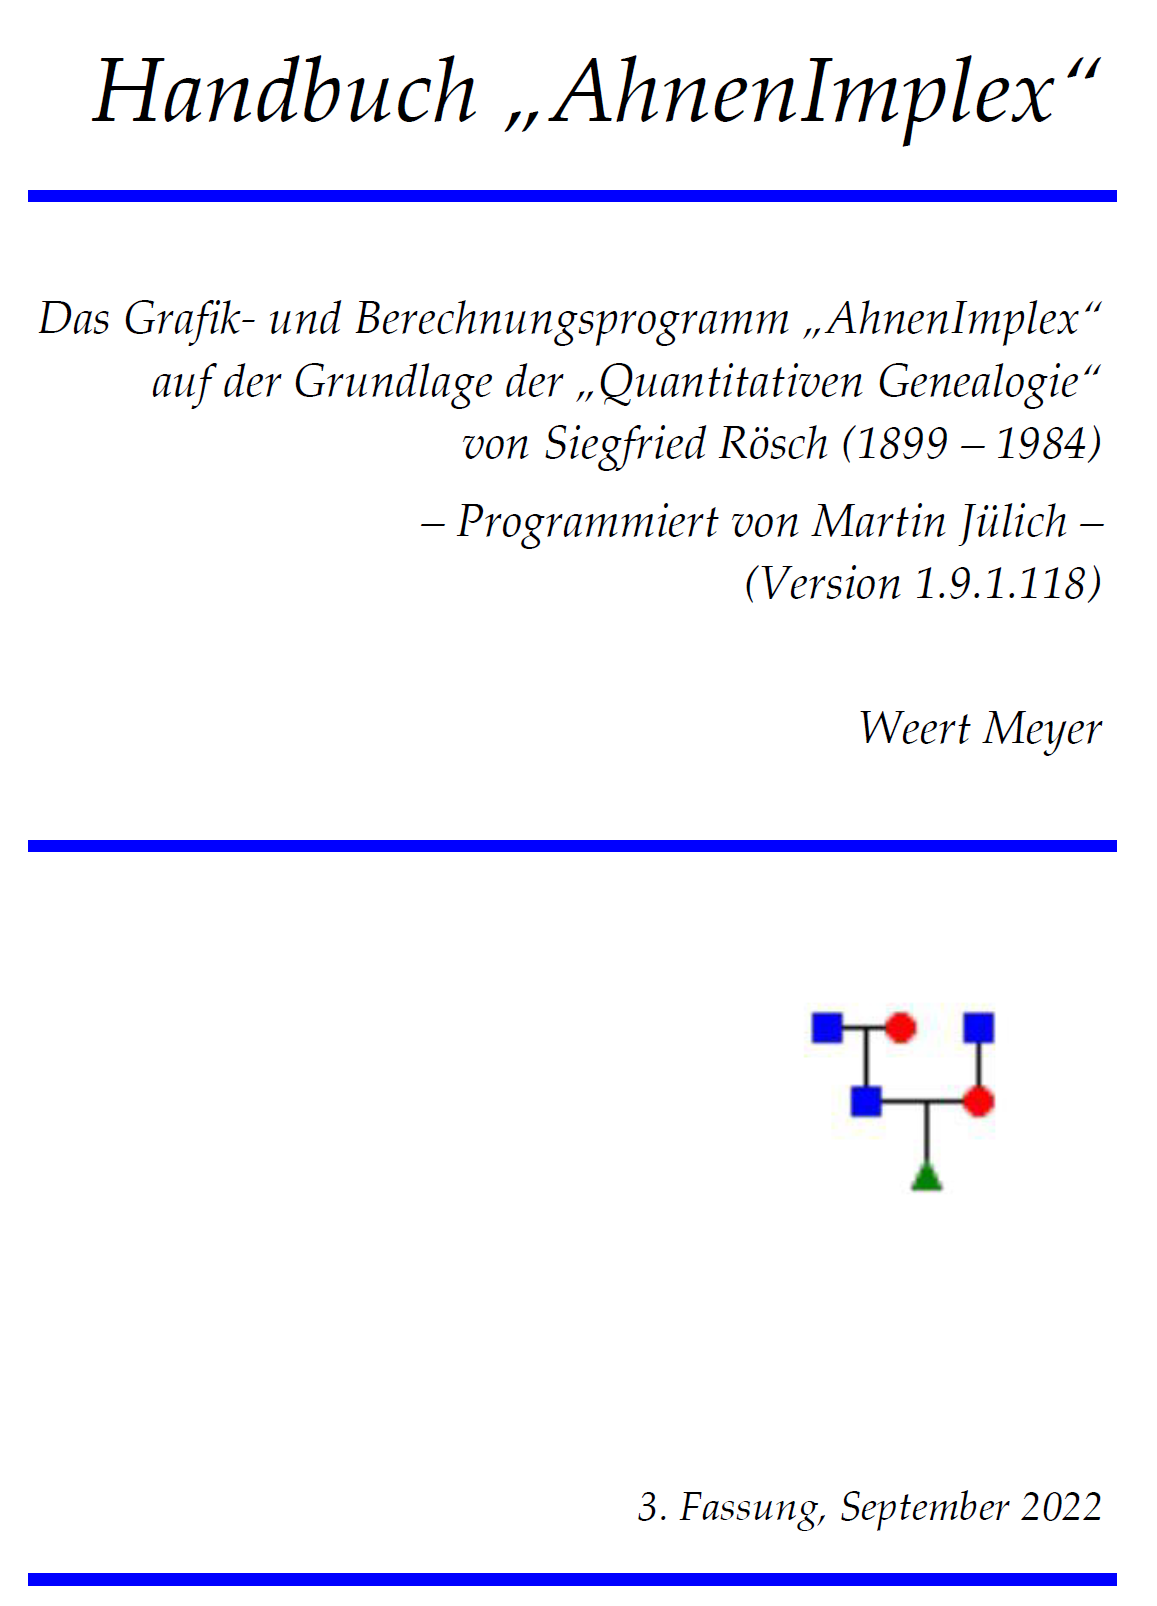 AhnenImplex - Handbuch von Weert Meyer zum Berechnungs- und Grafikprogramm